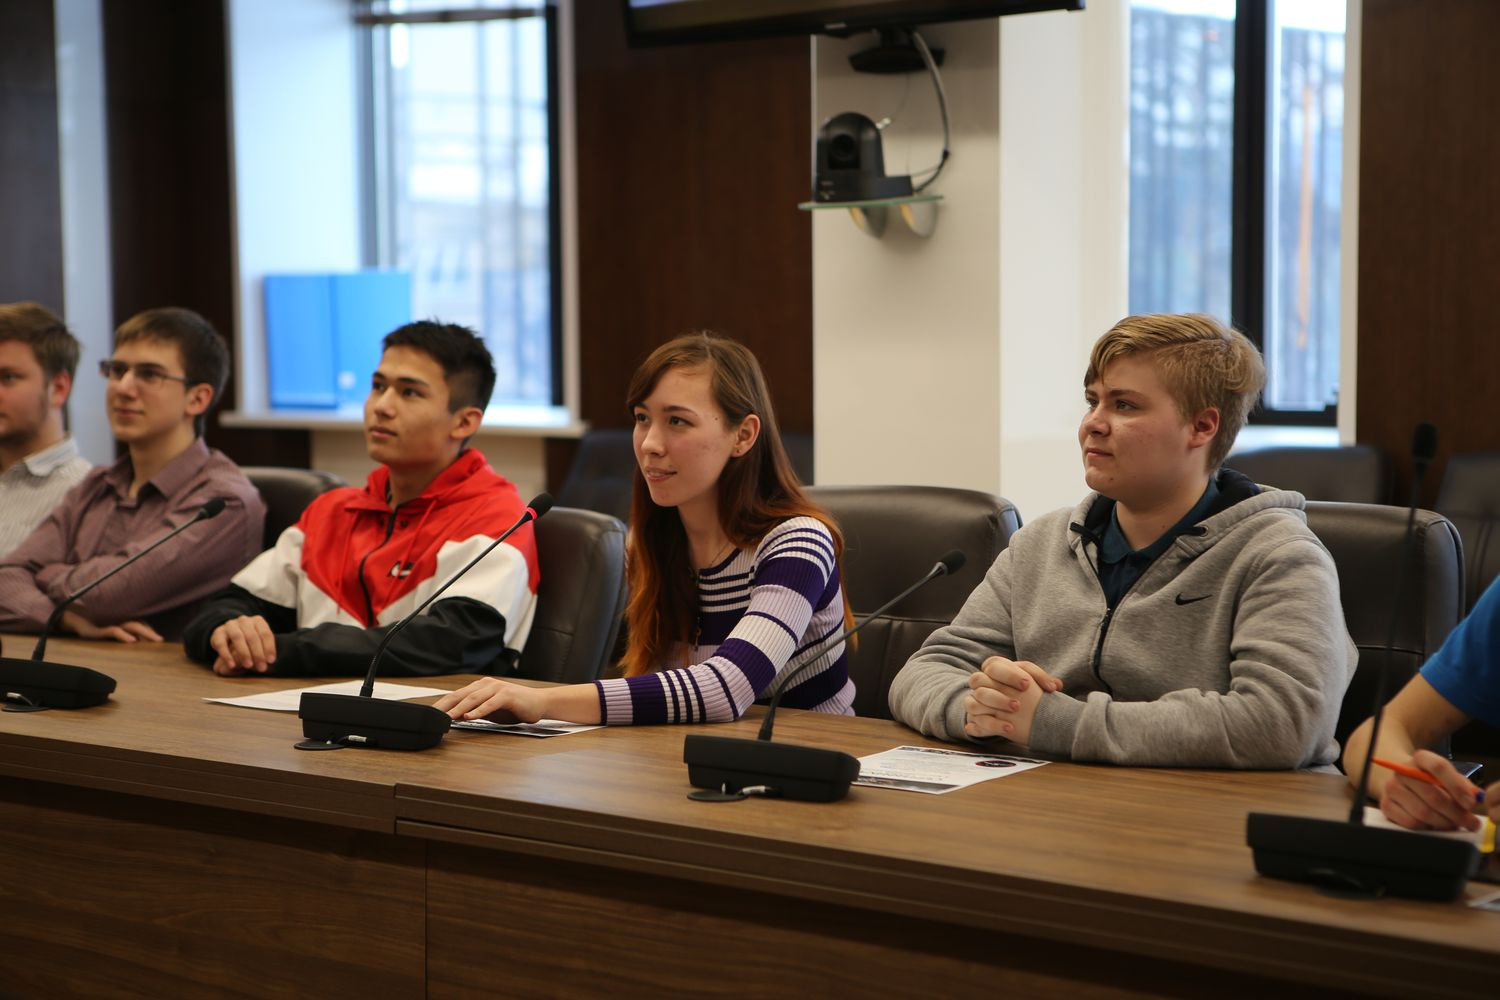 За полчаса школьники из четырёх городов России успели задать космонавту 15 вопросов